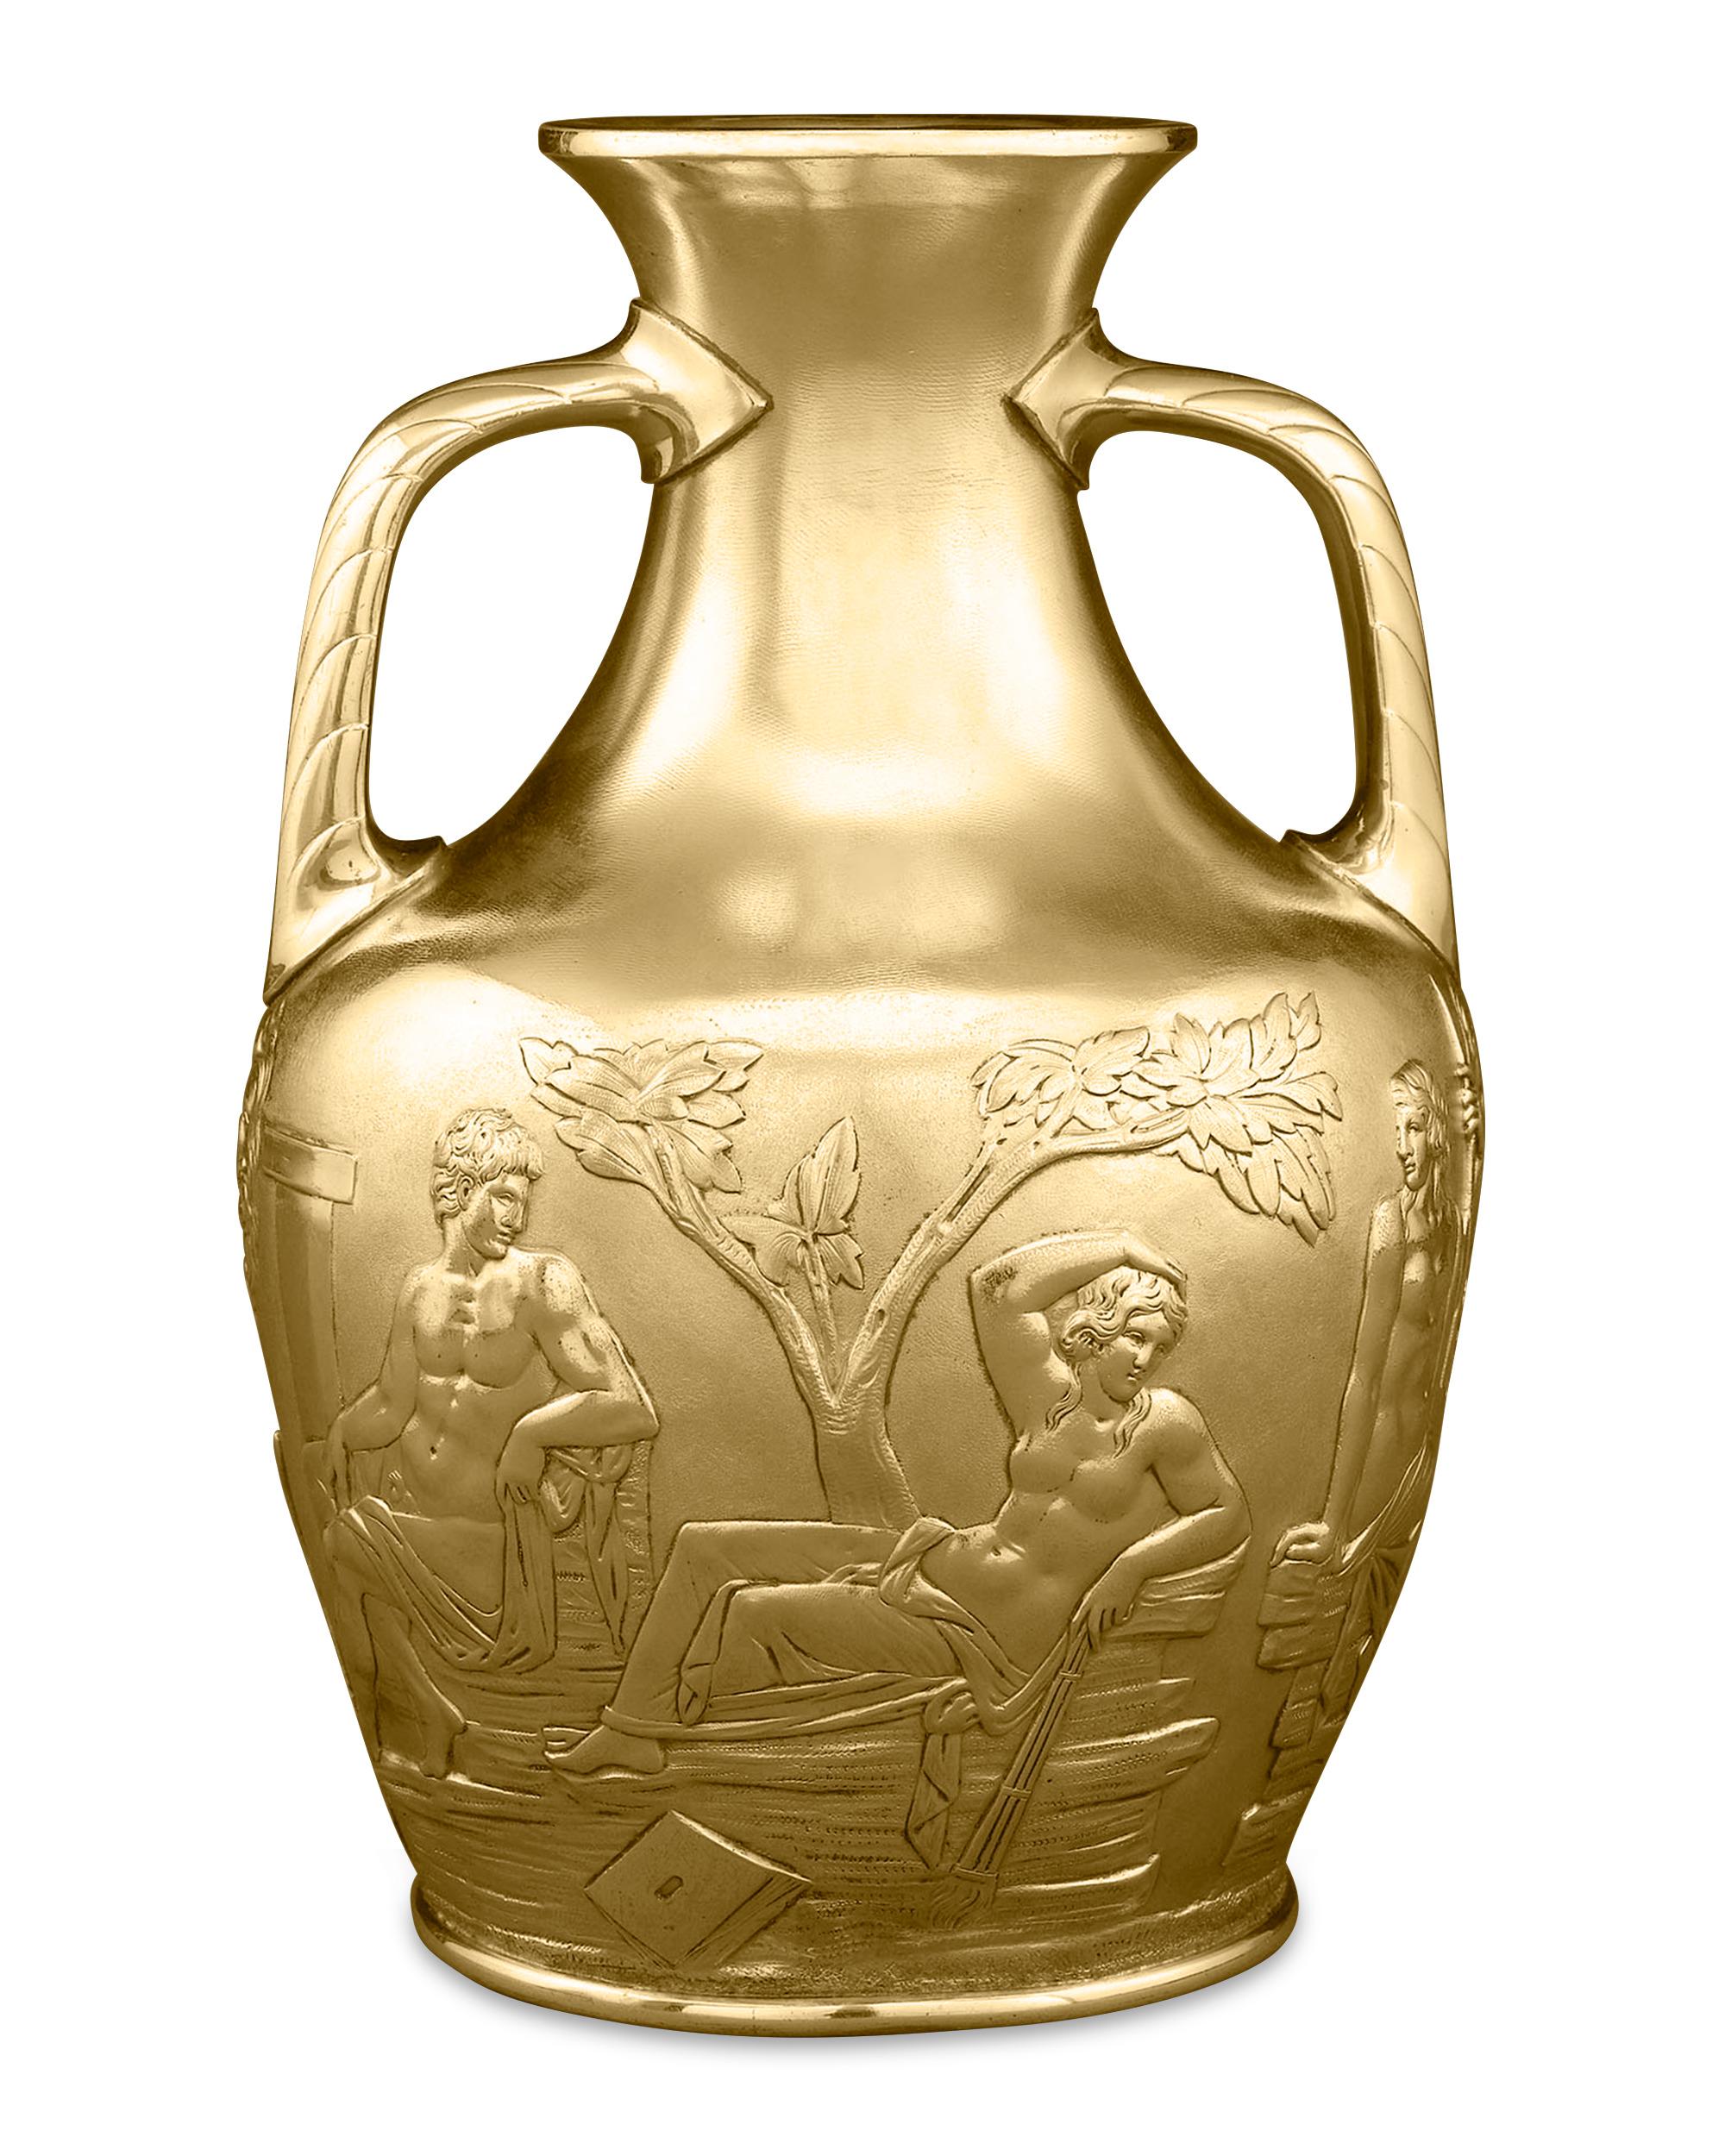 Diese prächtige silbervergoldete Portland-Vase wurde von der bahnbrechenden Silberschmiedefirma Elkington & Co. hergestellt. Die ikonischen Szenen aus der Antike sind mit äußerster Präzision auf einem strukturierten Hintergrund abgebildet und